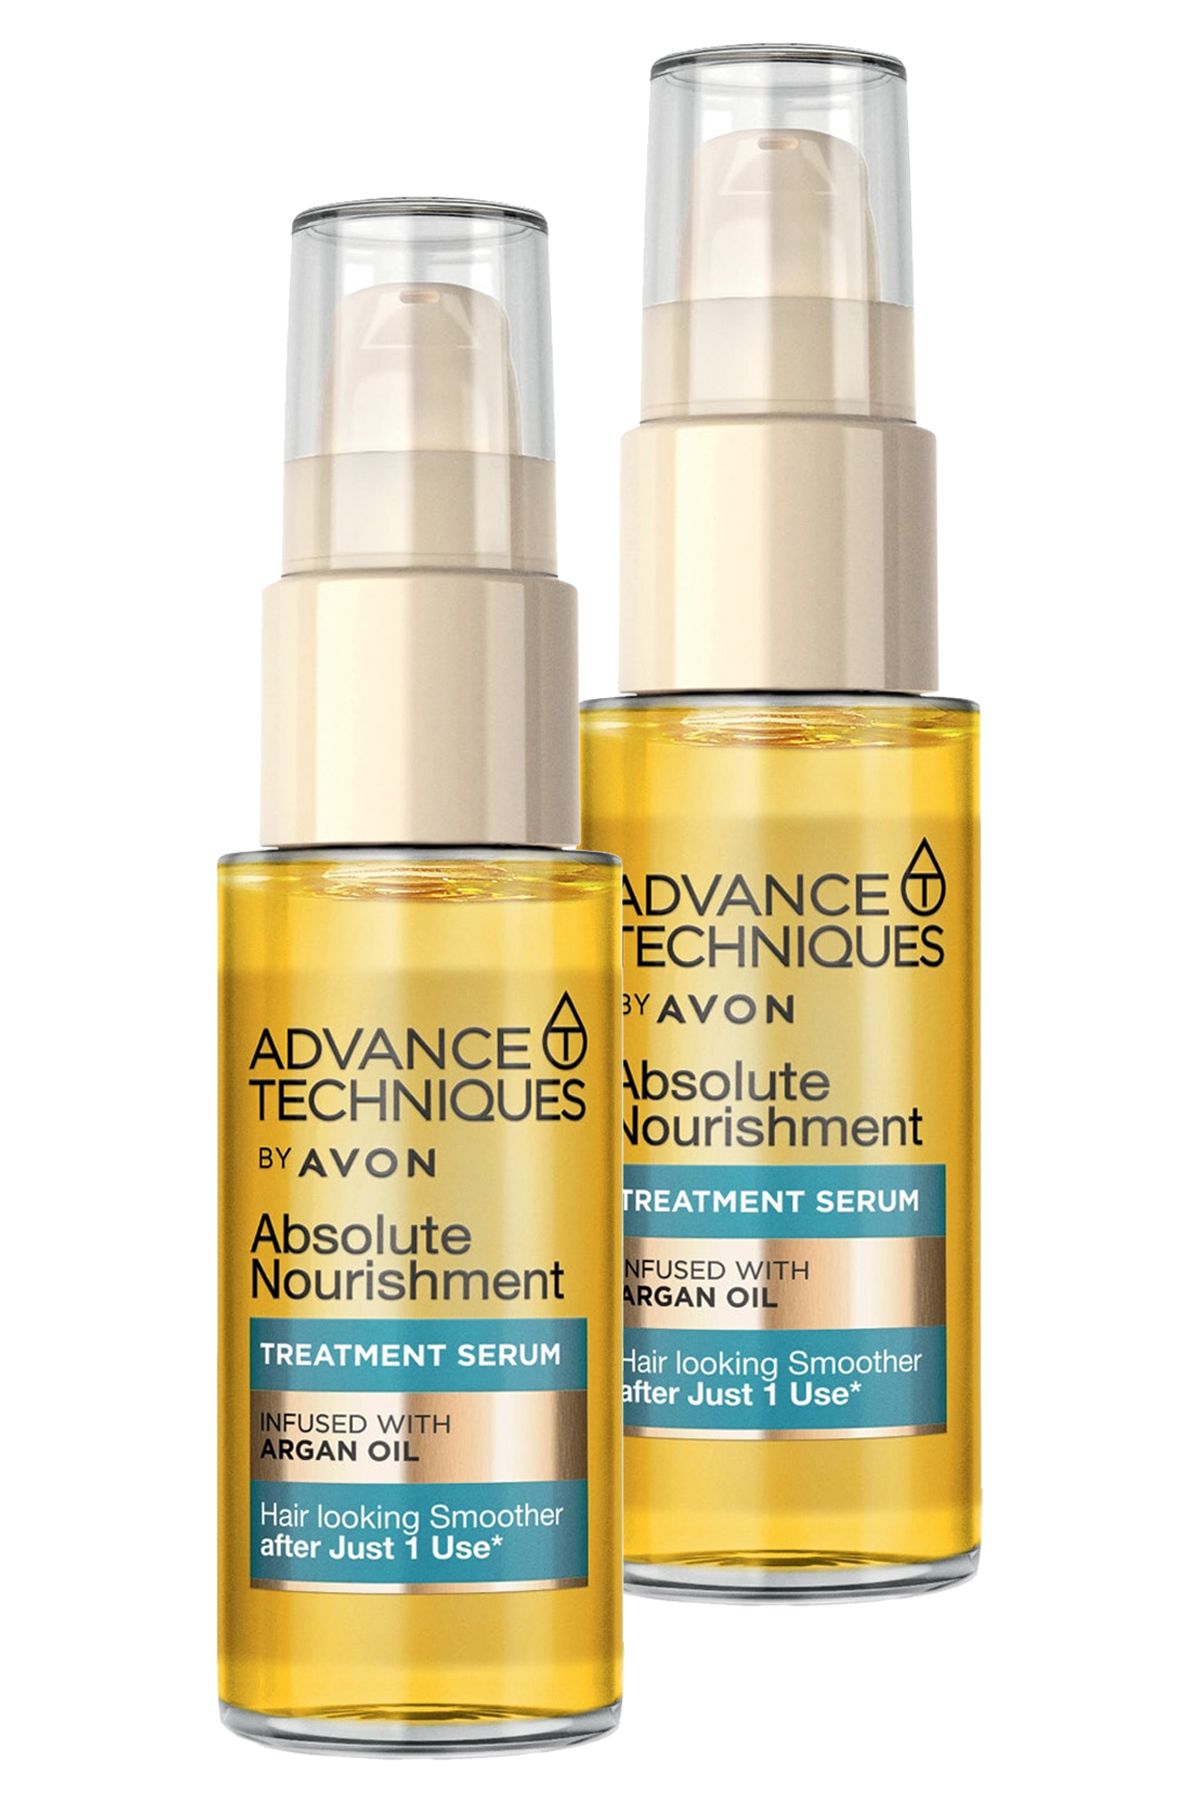 Avon Advance Techniques Argan Yağı Içeren Besleyici Saç Serumu 30 Ml. İkili Set